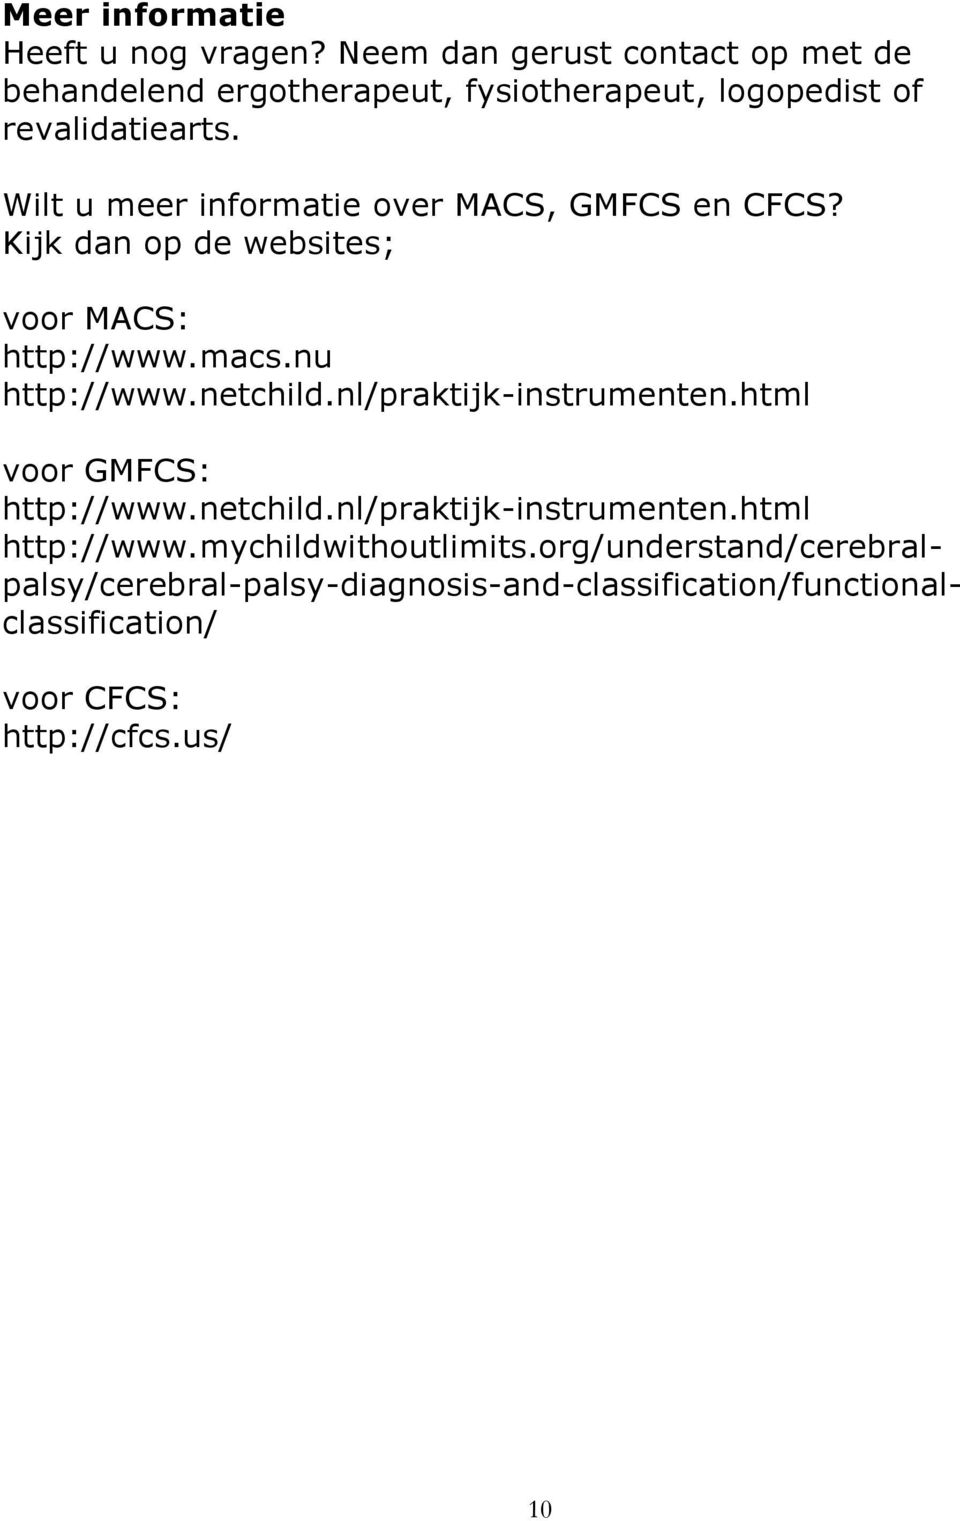 Wilt u meer informatie over MACS, GMFCS en CFCS? Kijk dan op de websites; voor MACS: http://www.macs.nu http://www.netchild.